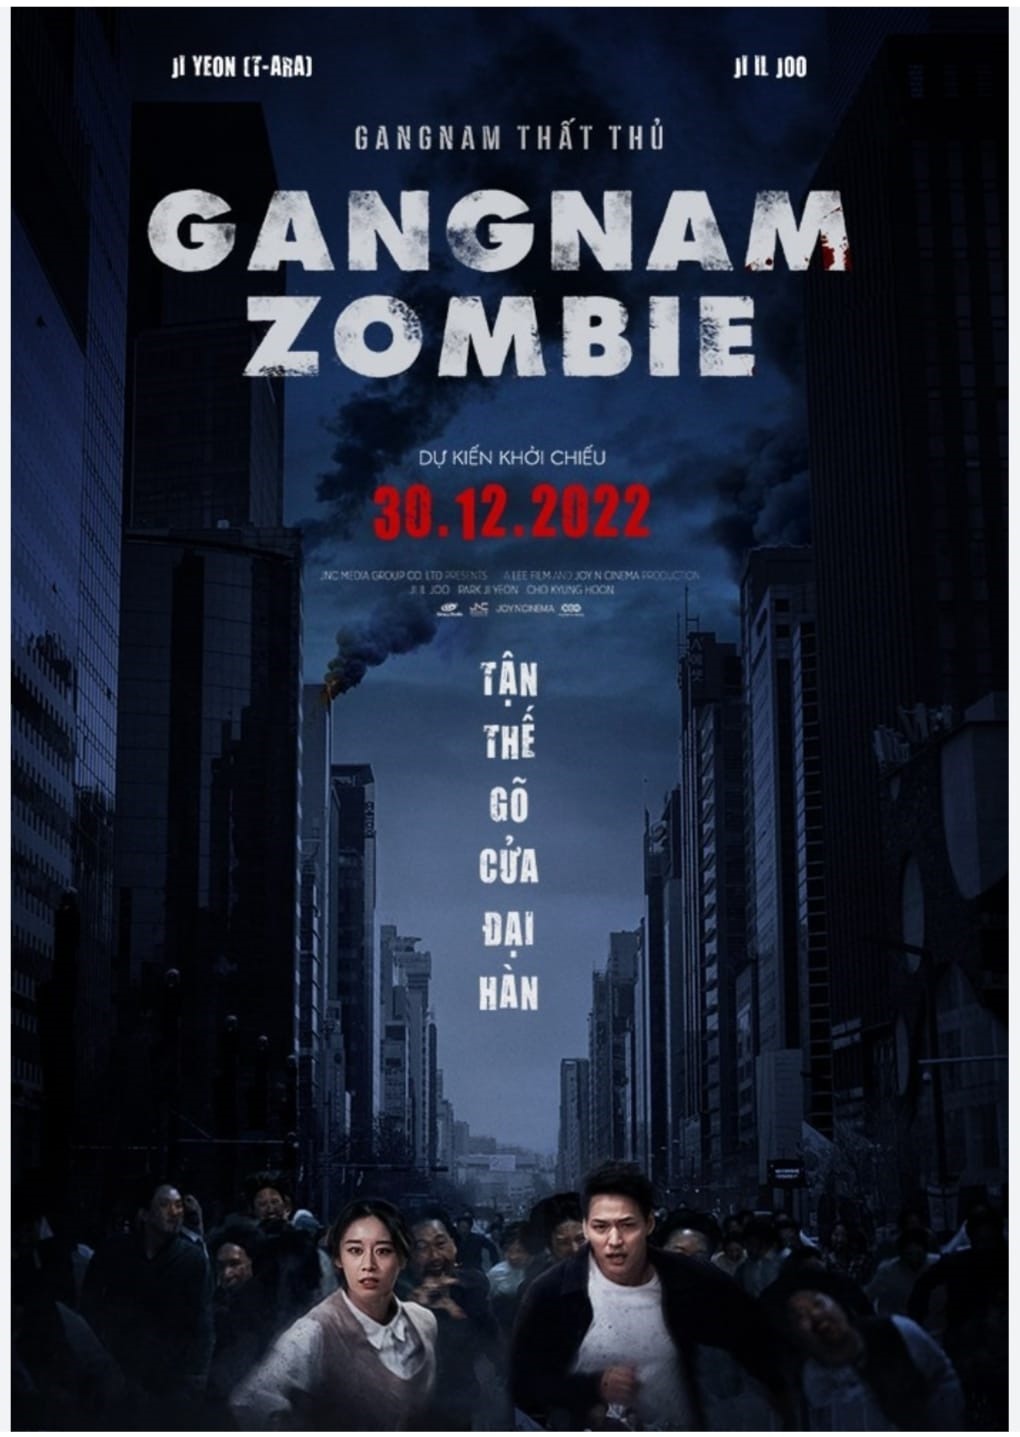 Gangnam thất thủ là bộ phim về đề tài Zomebie. Ảnh: Nhà sản xuất